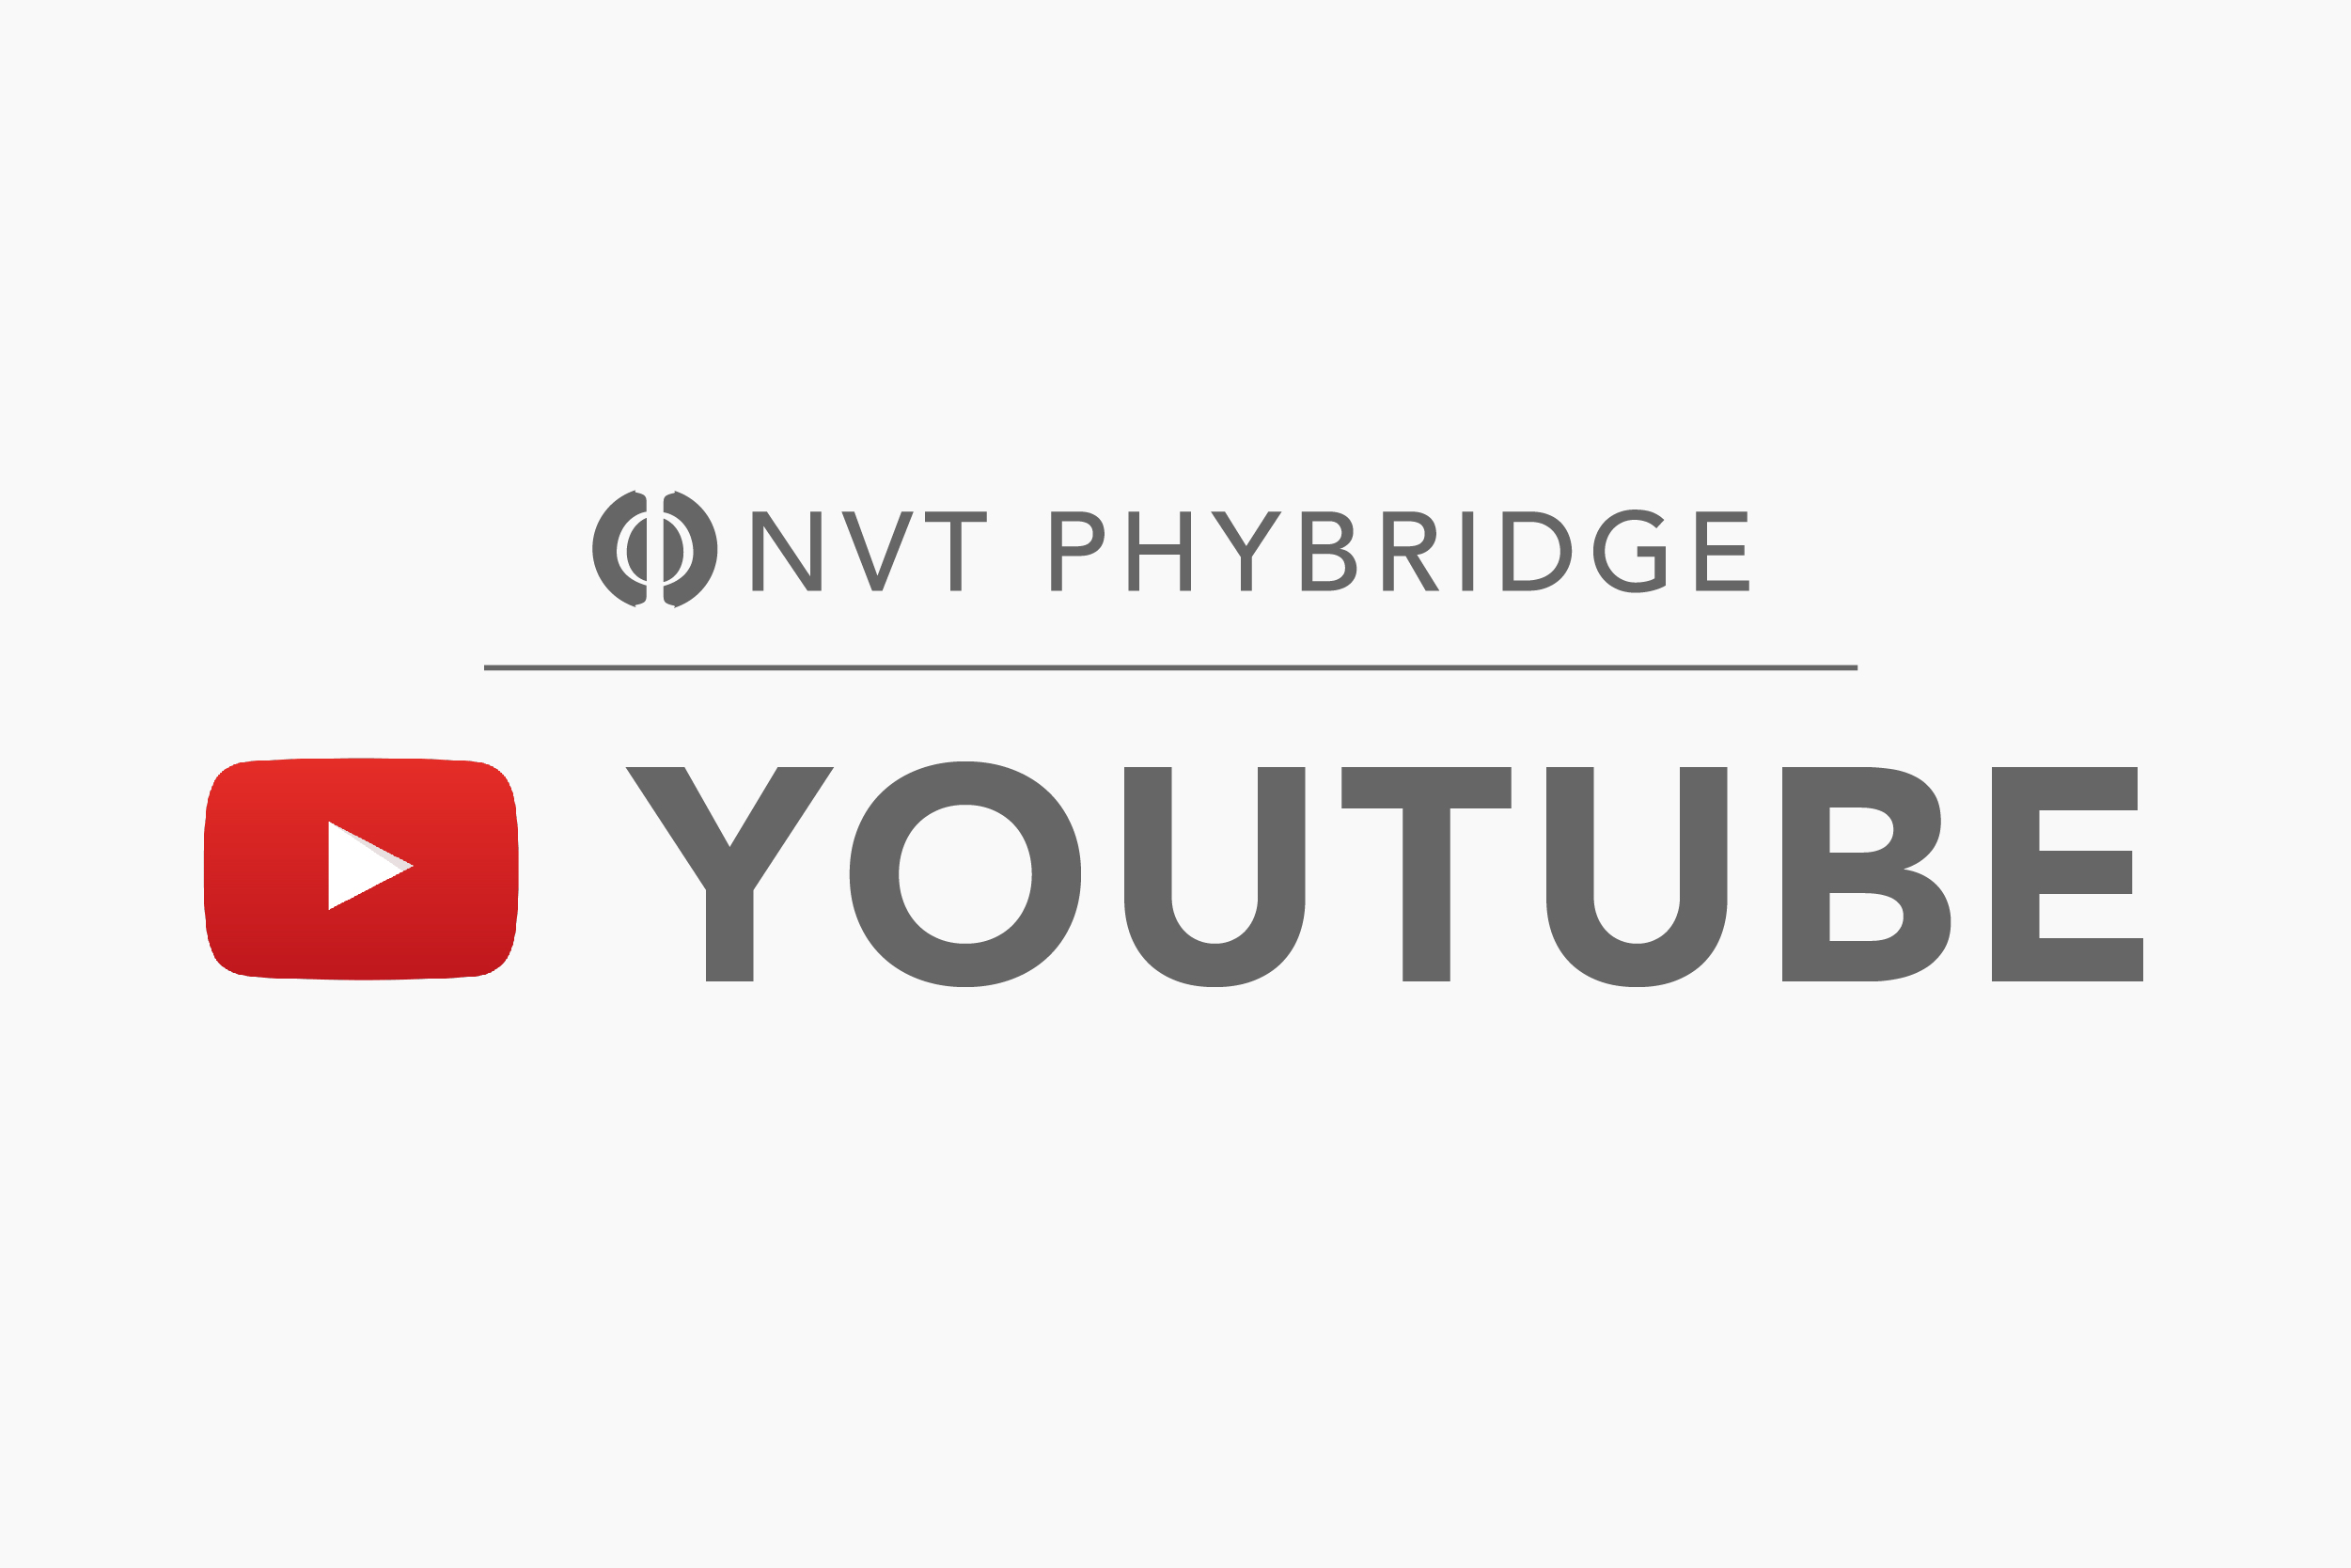 NVT Phybridge YouTube Logo